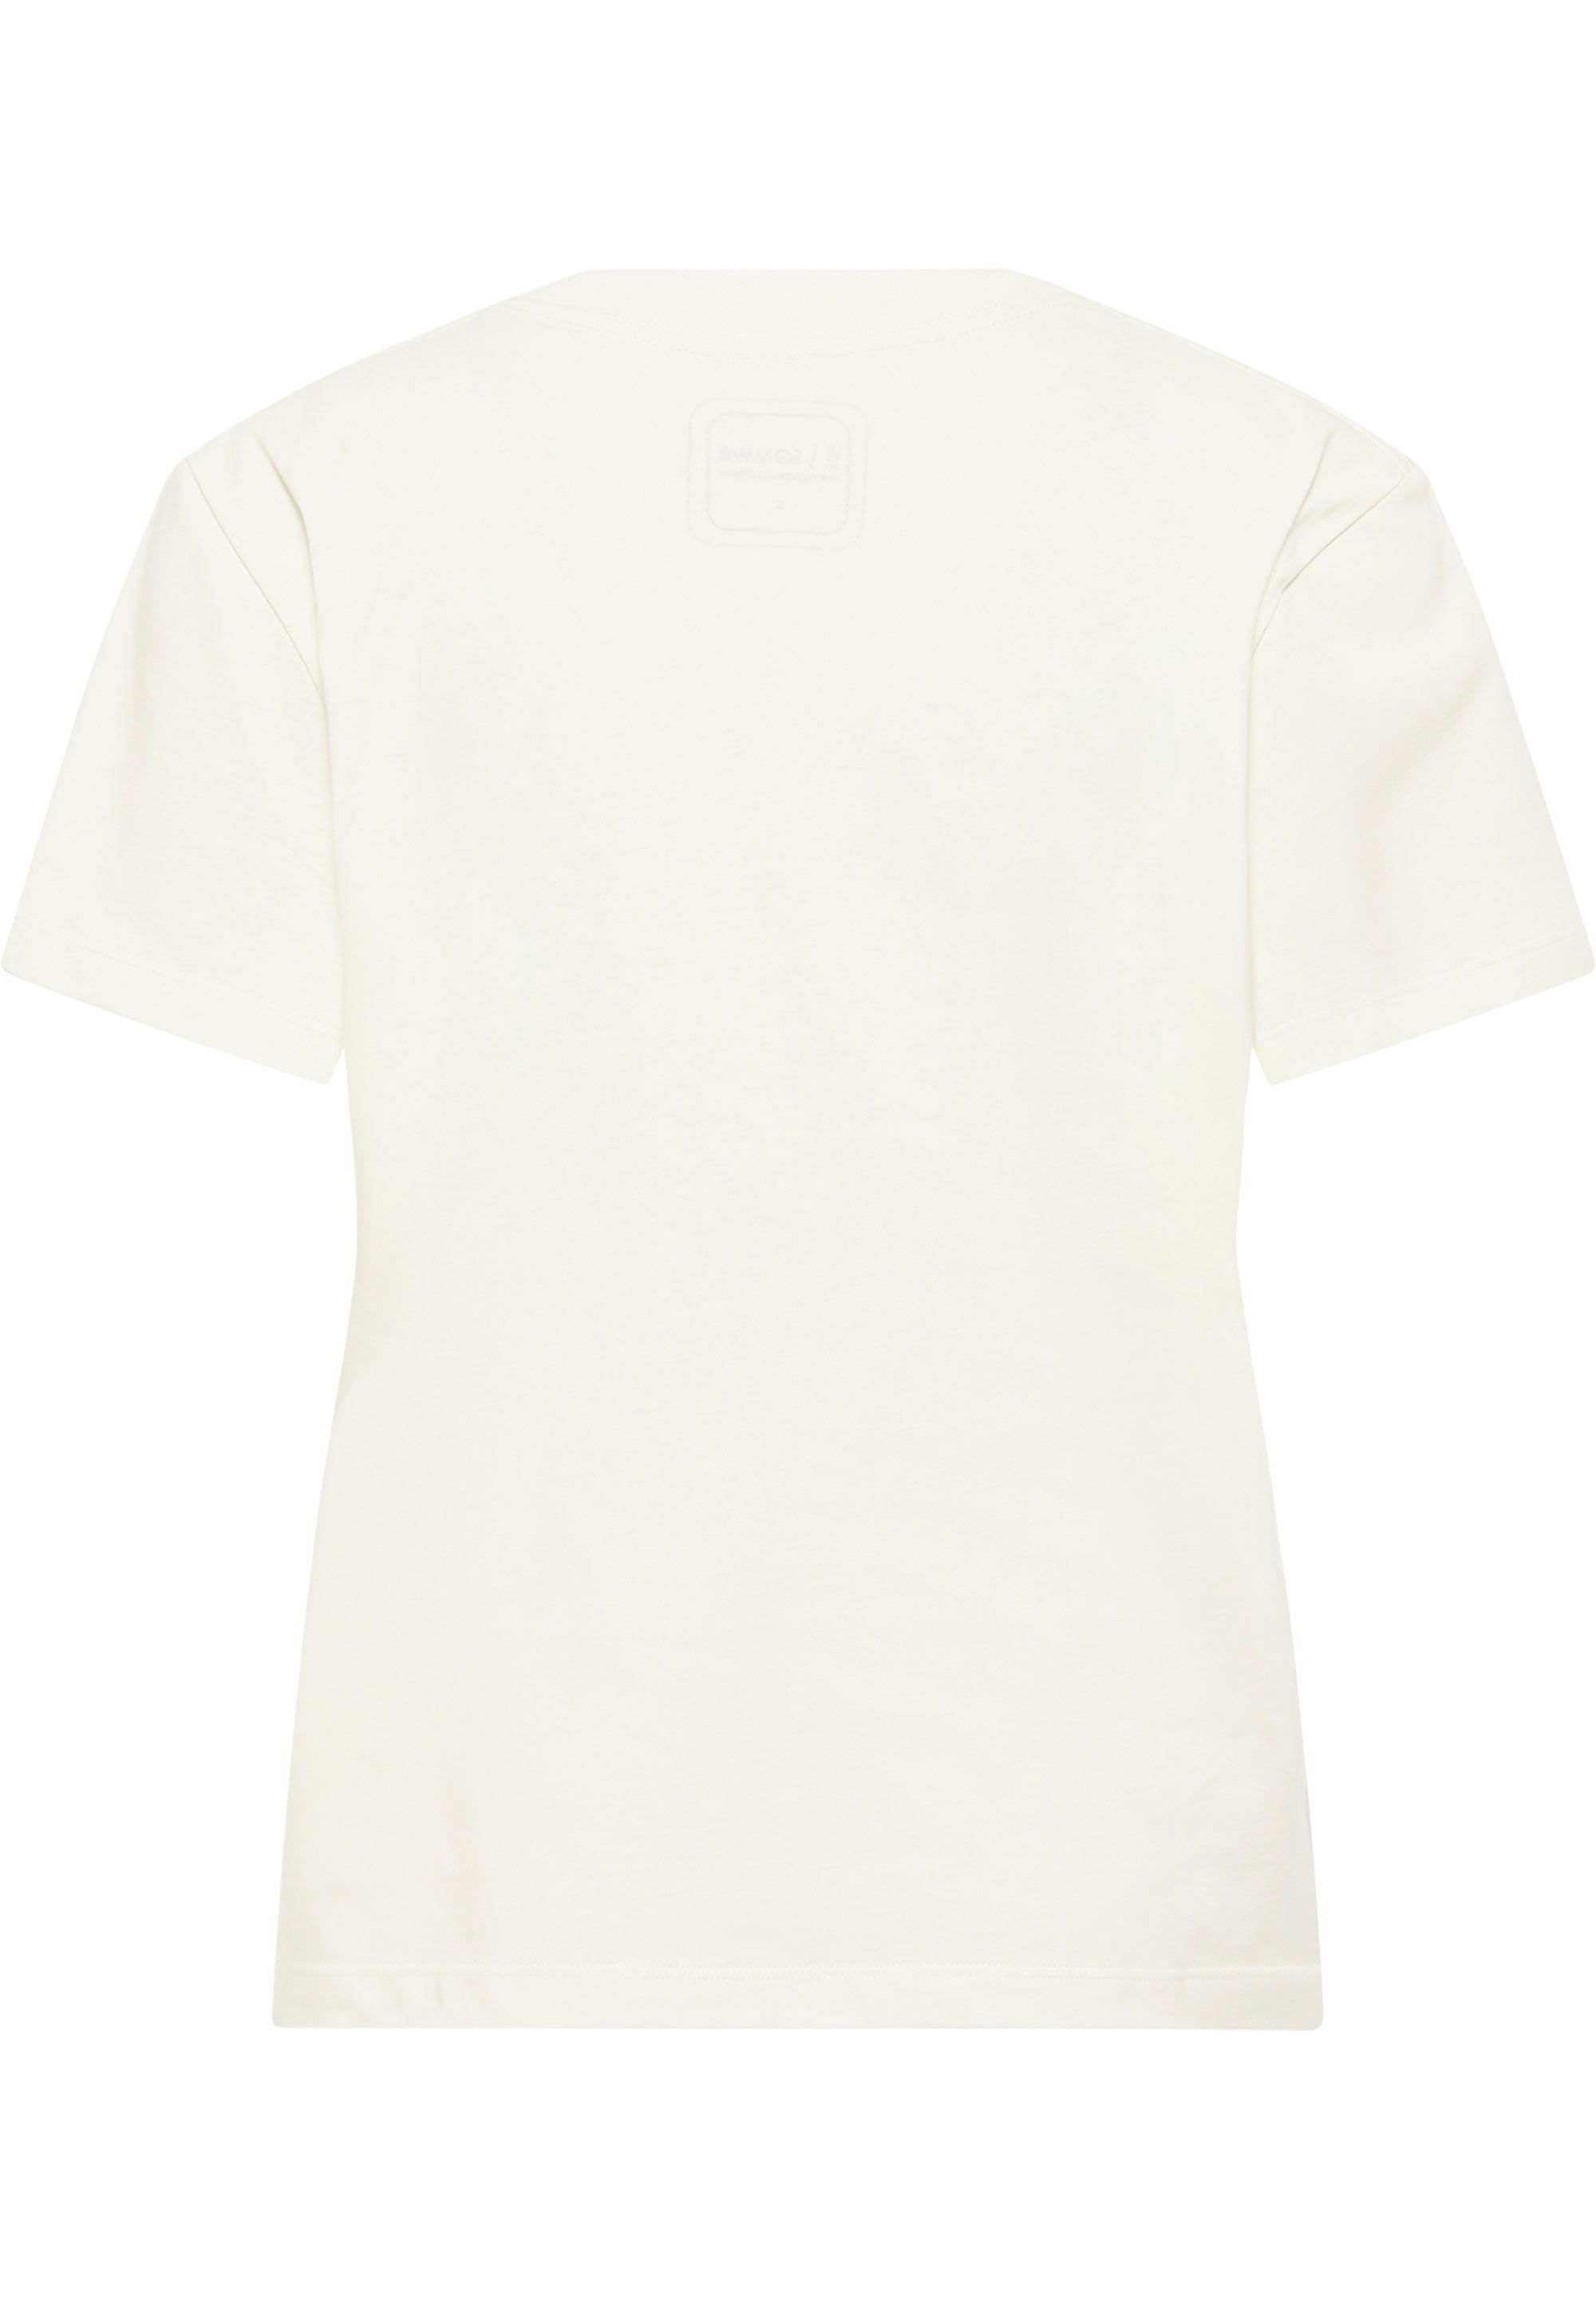 SOMWR TAPER T-Shirt UND001